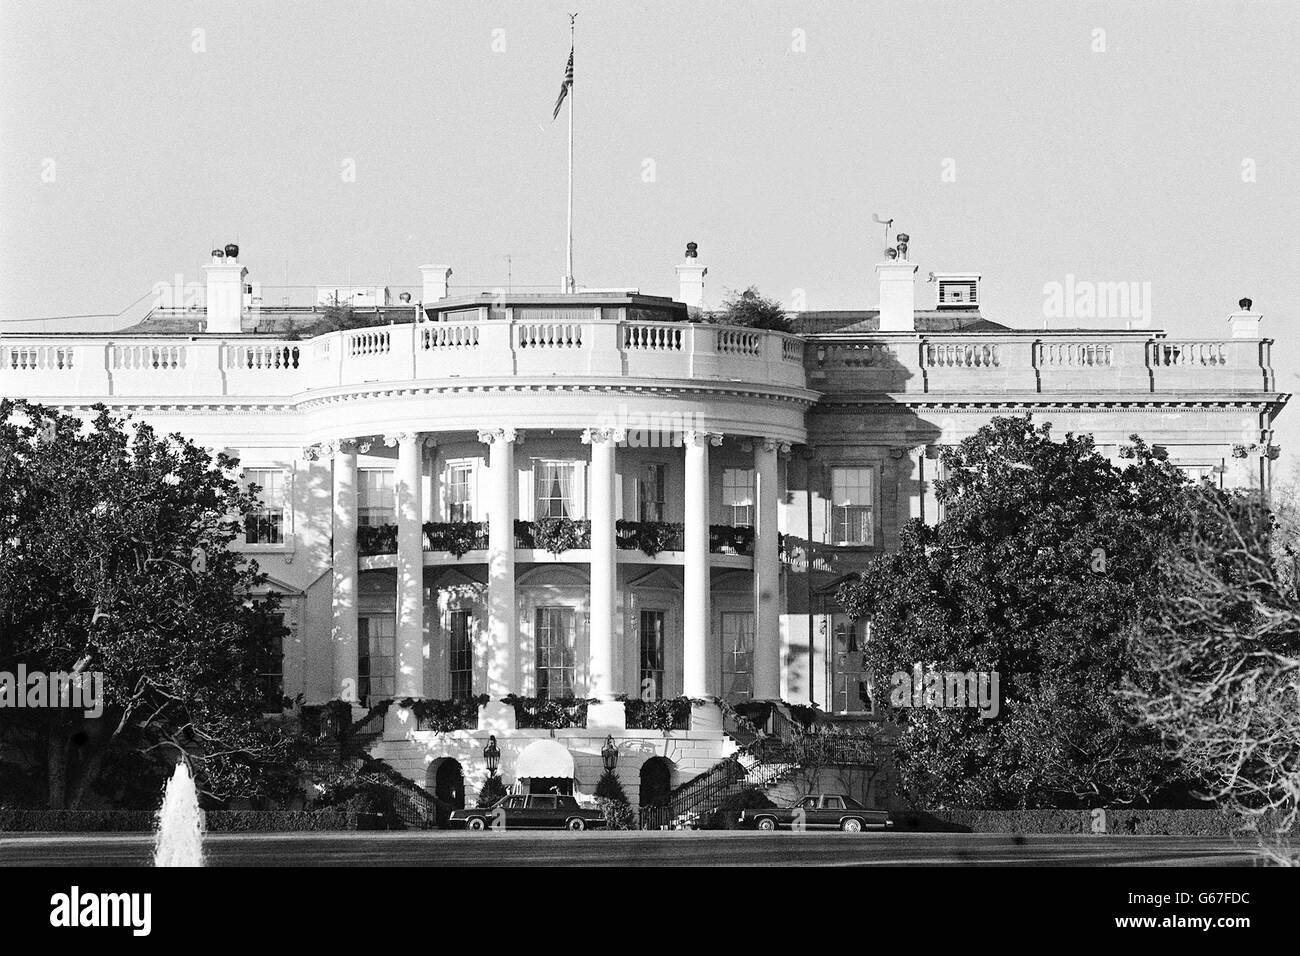 The White House. The White House, Washington D.C Stock Photo